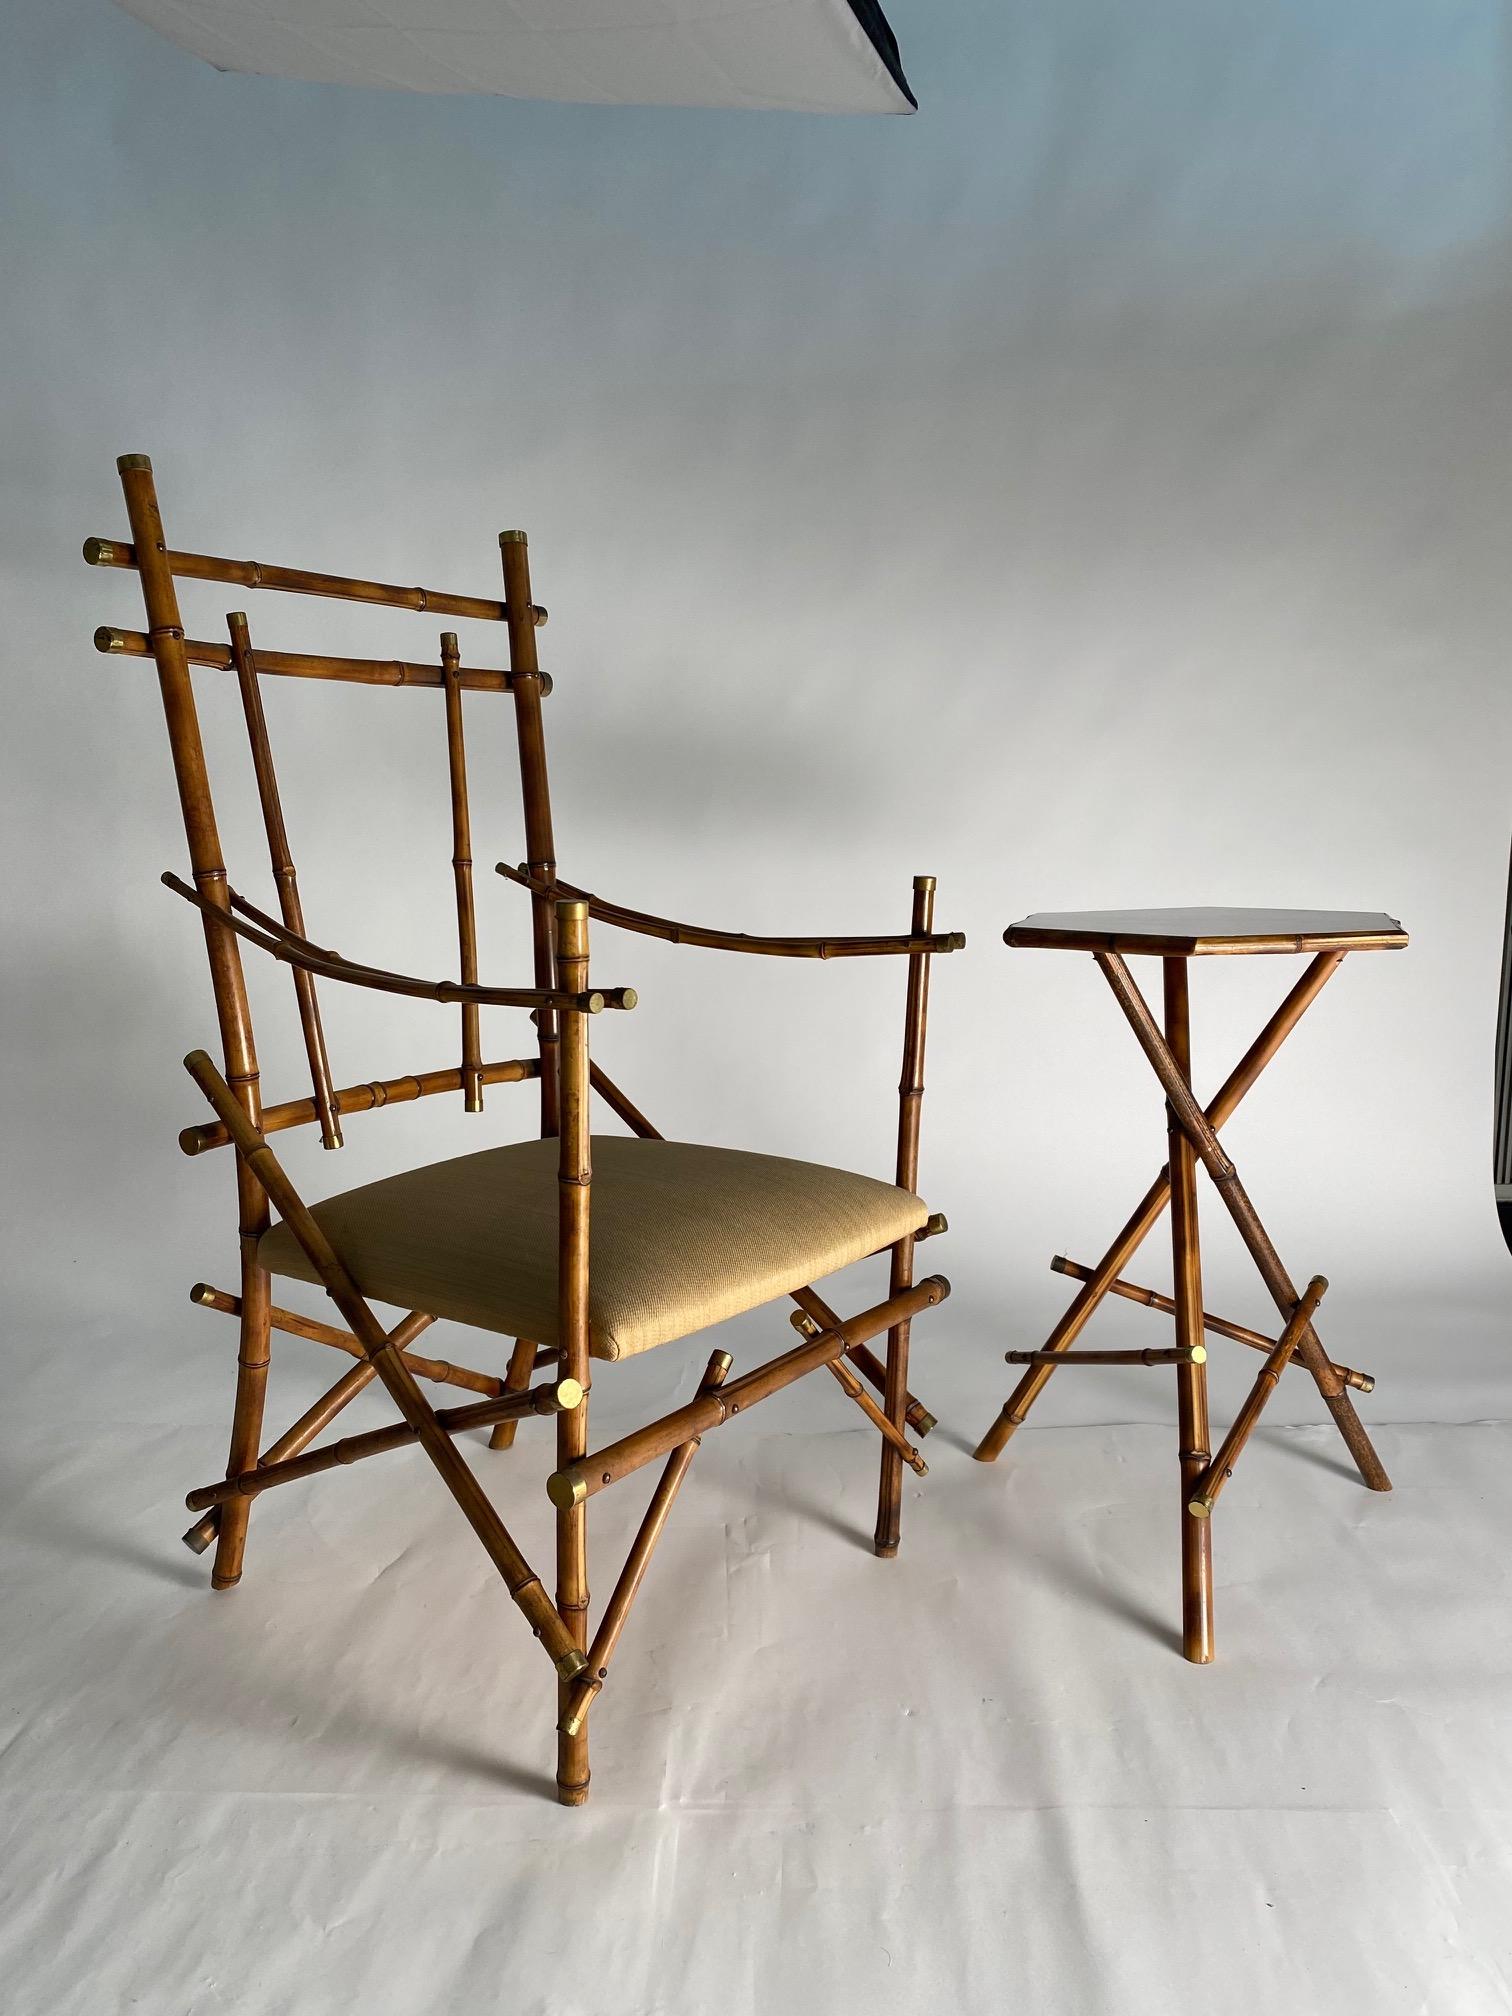 Seltenes und sehr raffiniertes Paar von Sesseln und Couchtisch aus Bambus und Messing, Italien, 1970er Jahre.

Vivai Del sud Produktion